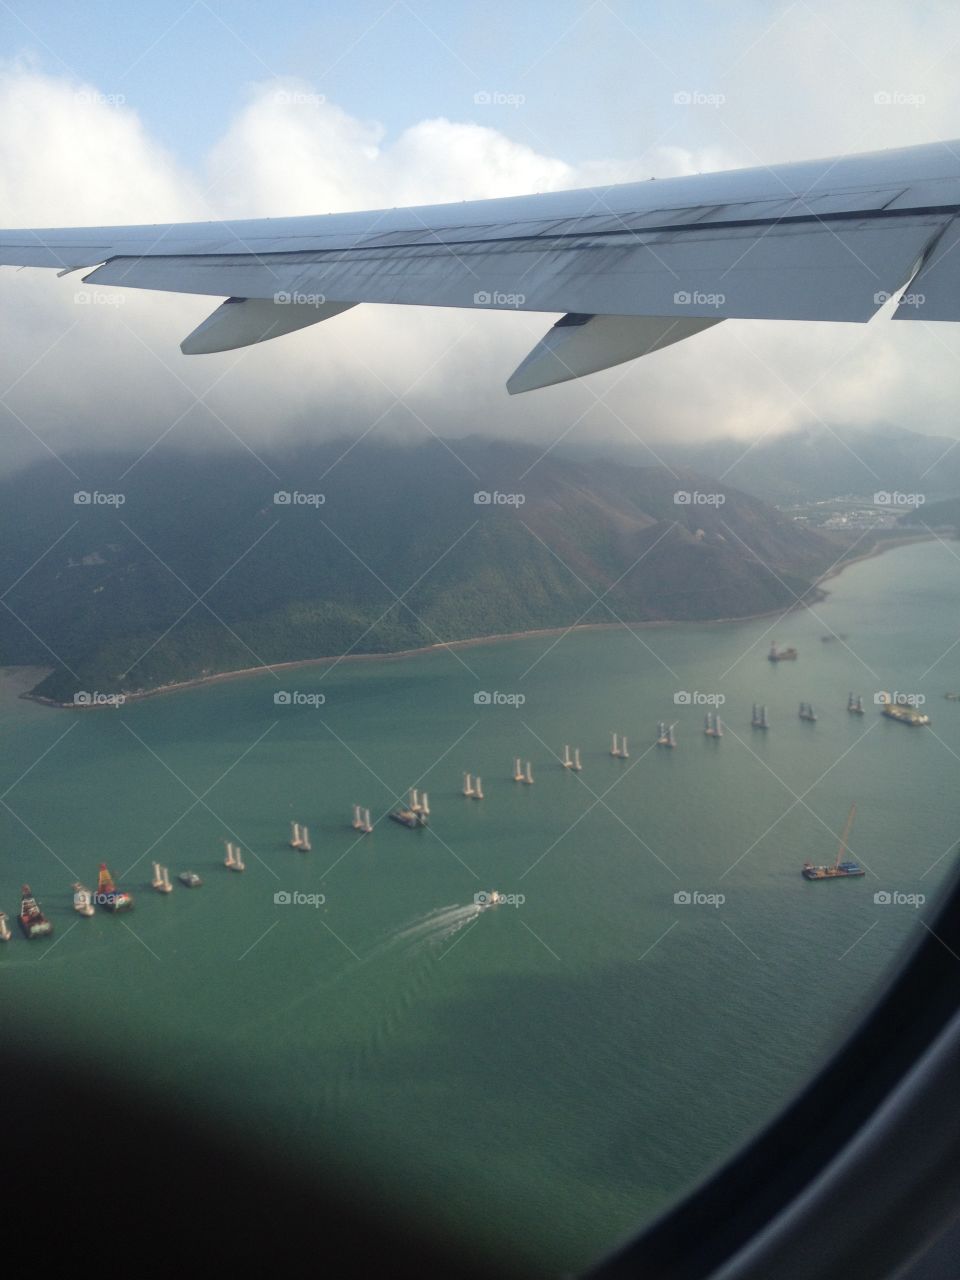 Boats at Hong Kong from a plane